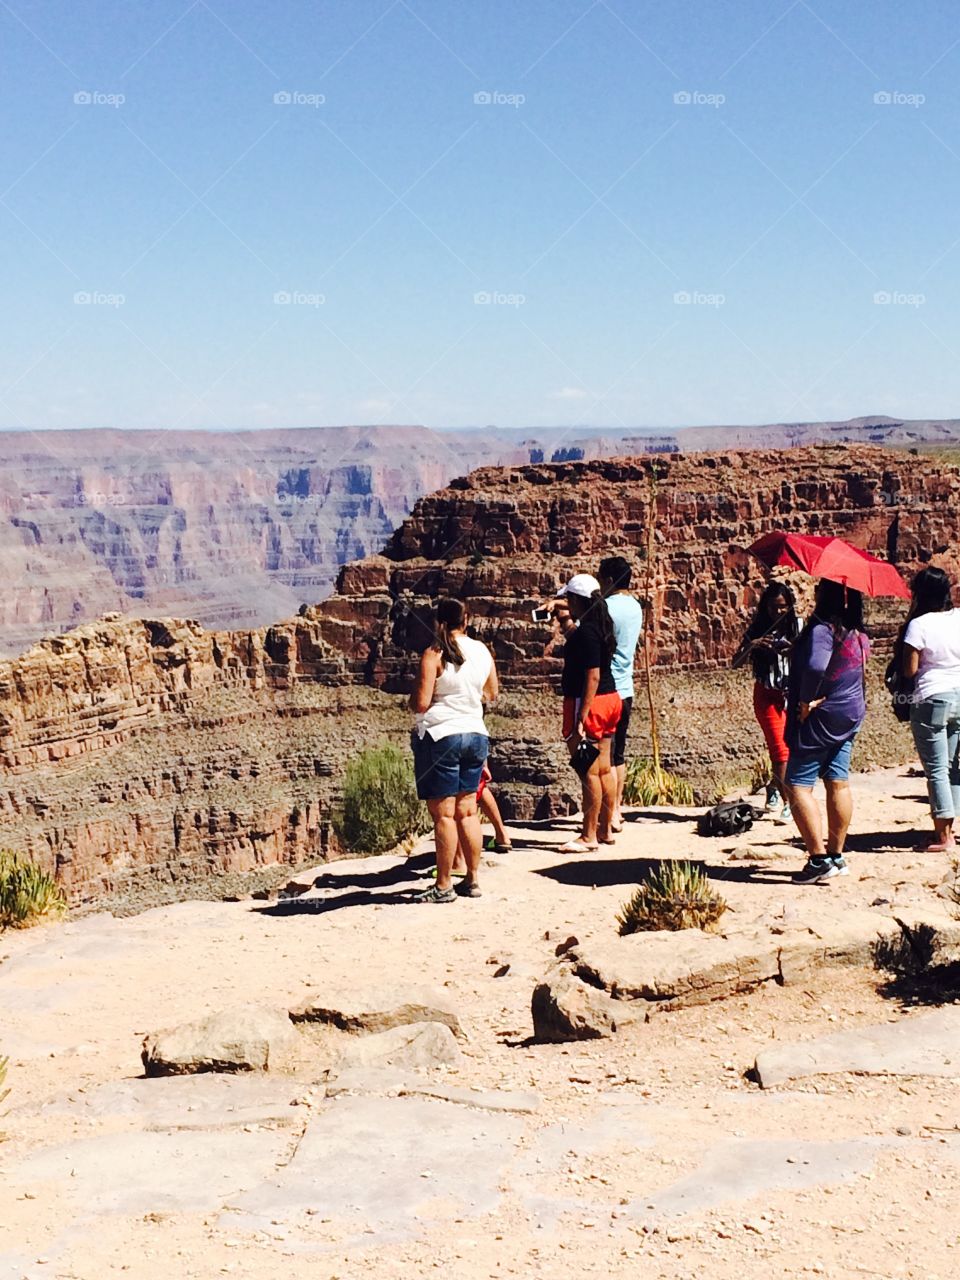 Vacationing at the Grand Canyon